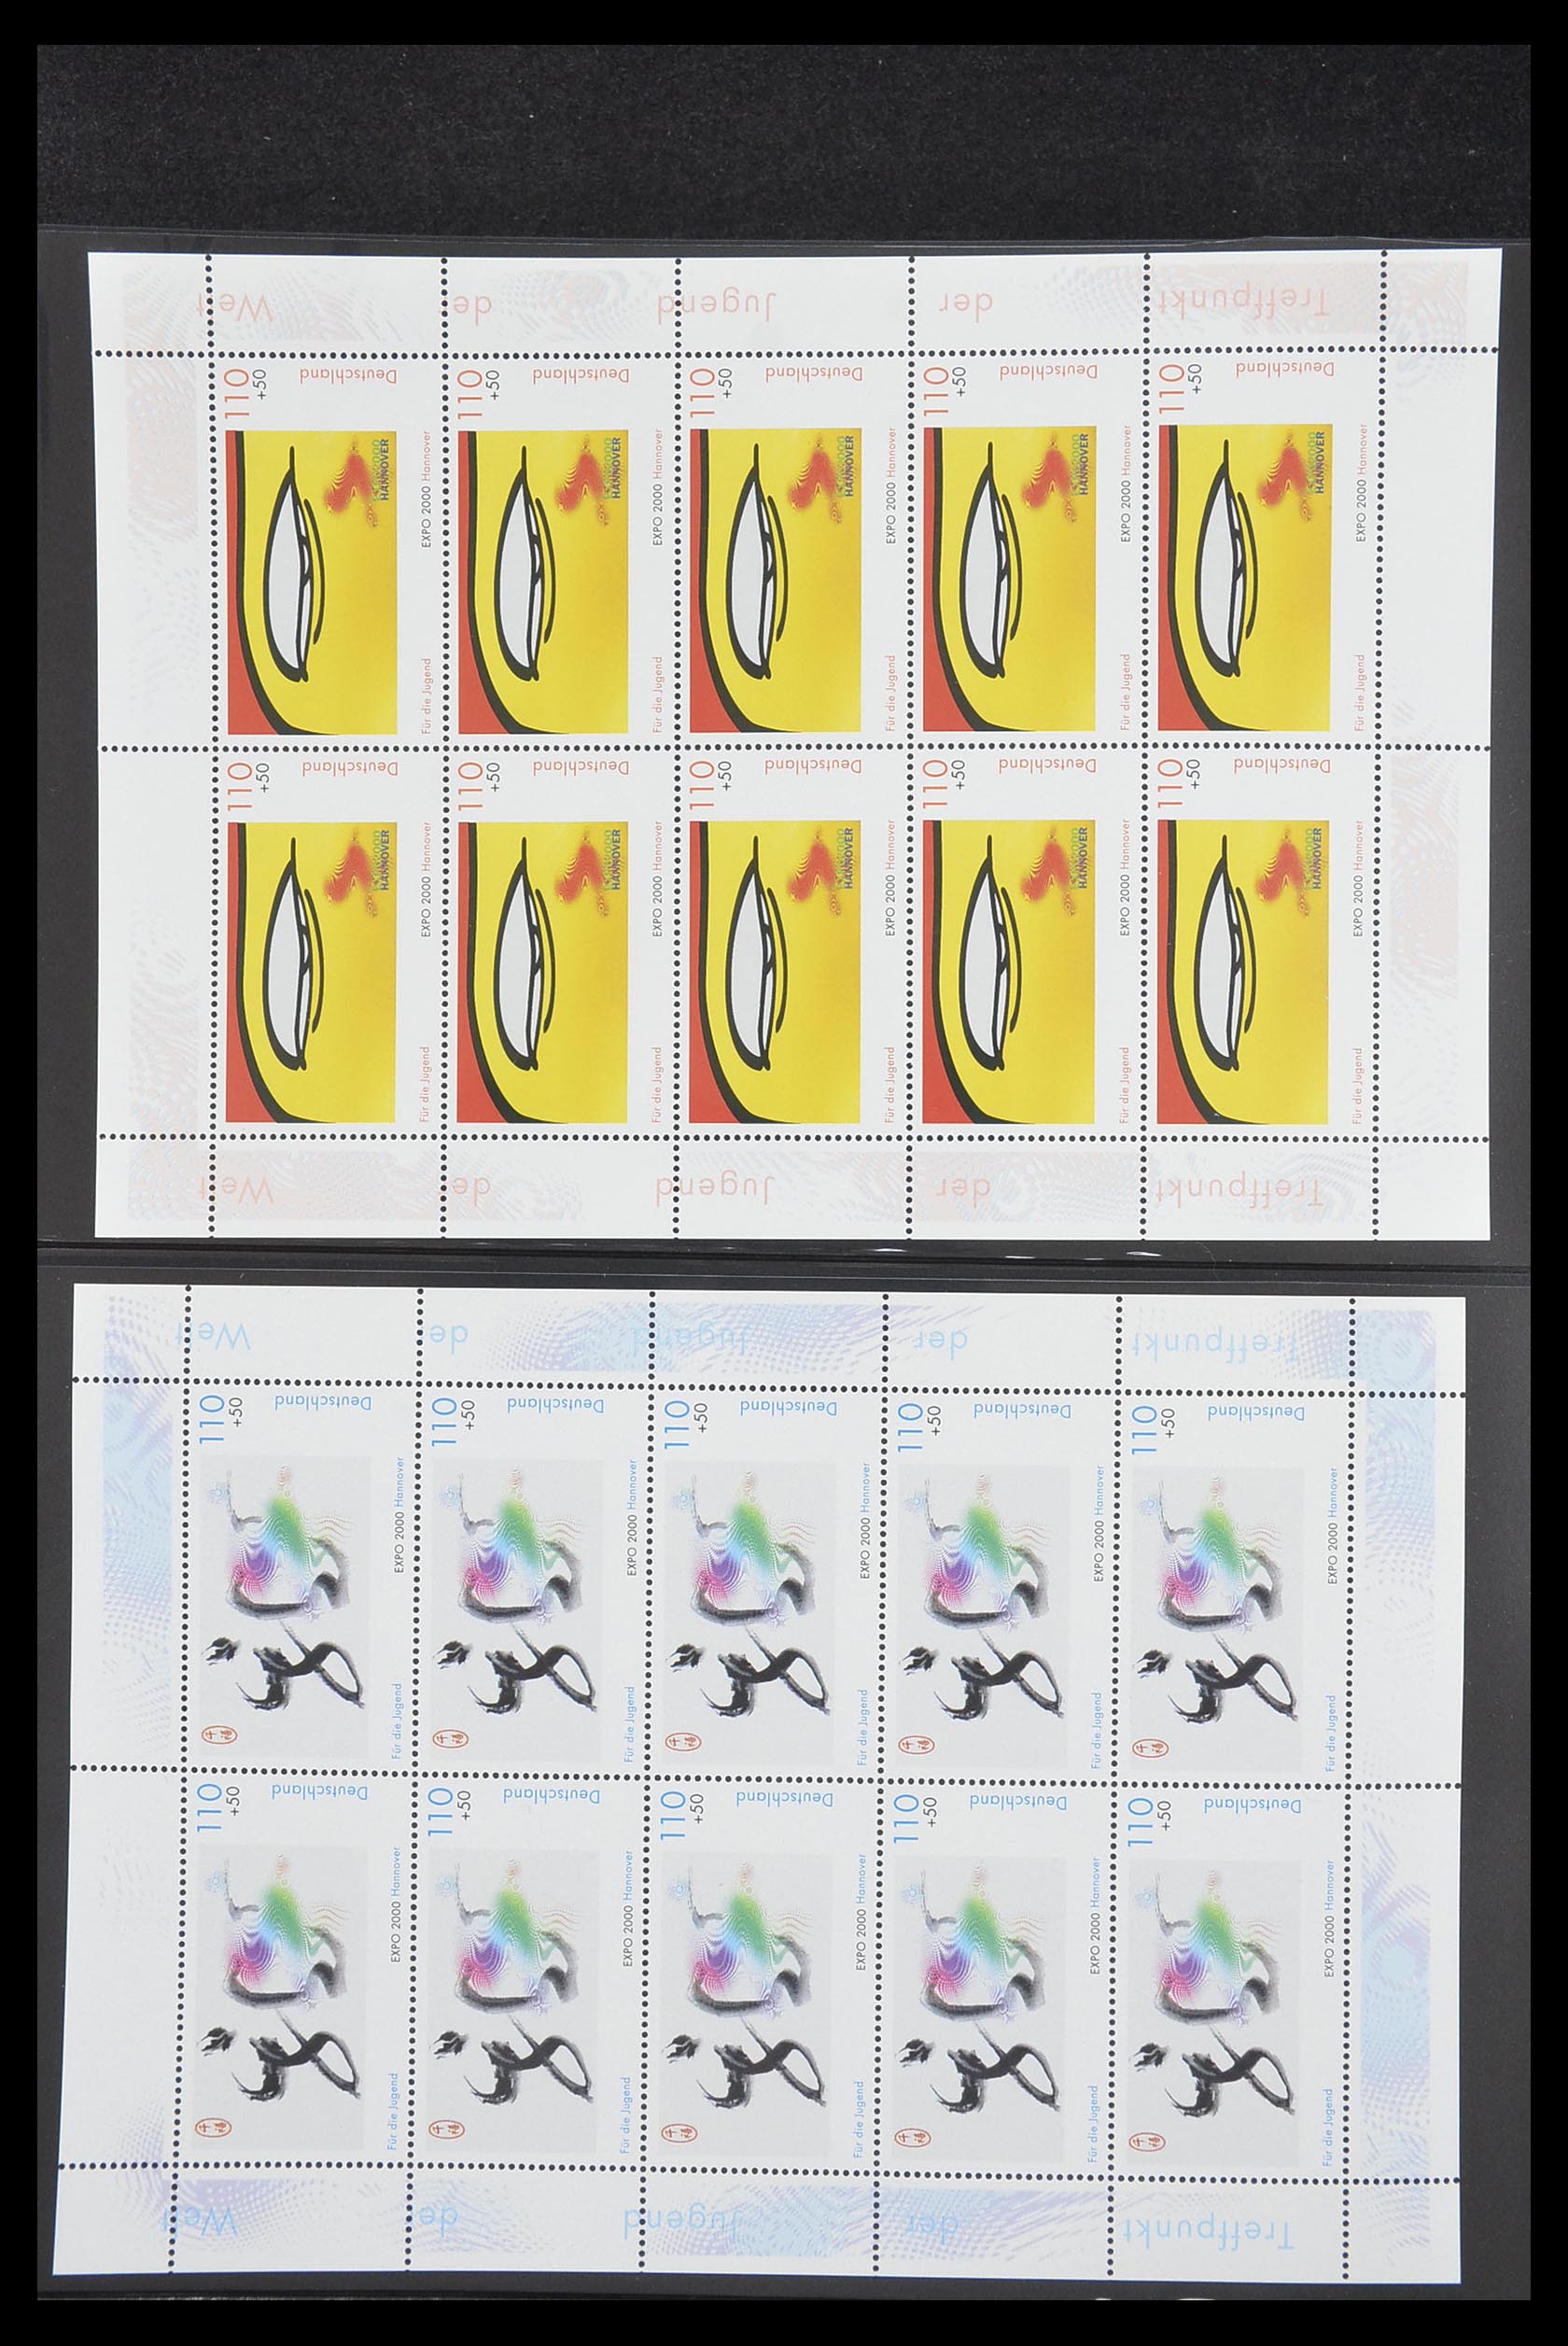 33936 161 - Stamp collection 33936 Bundespost kleinbogen 1994-2000.